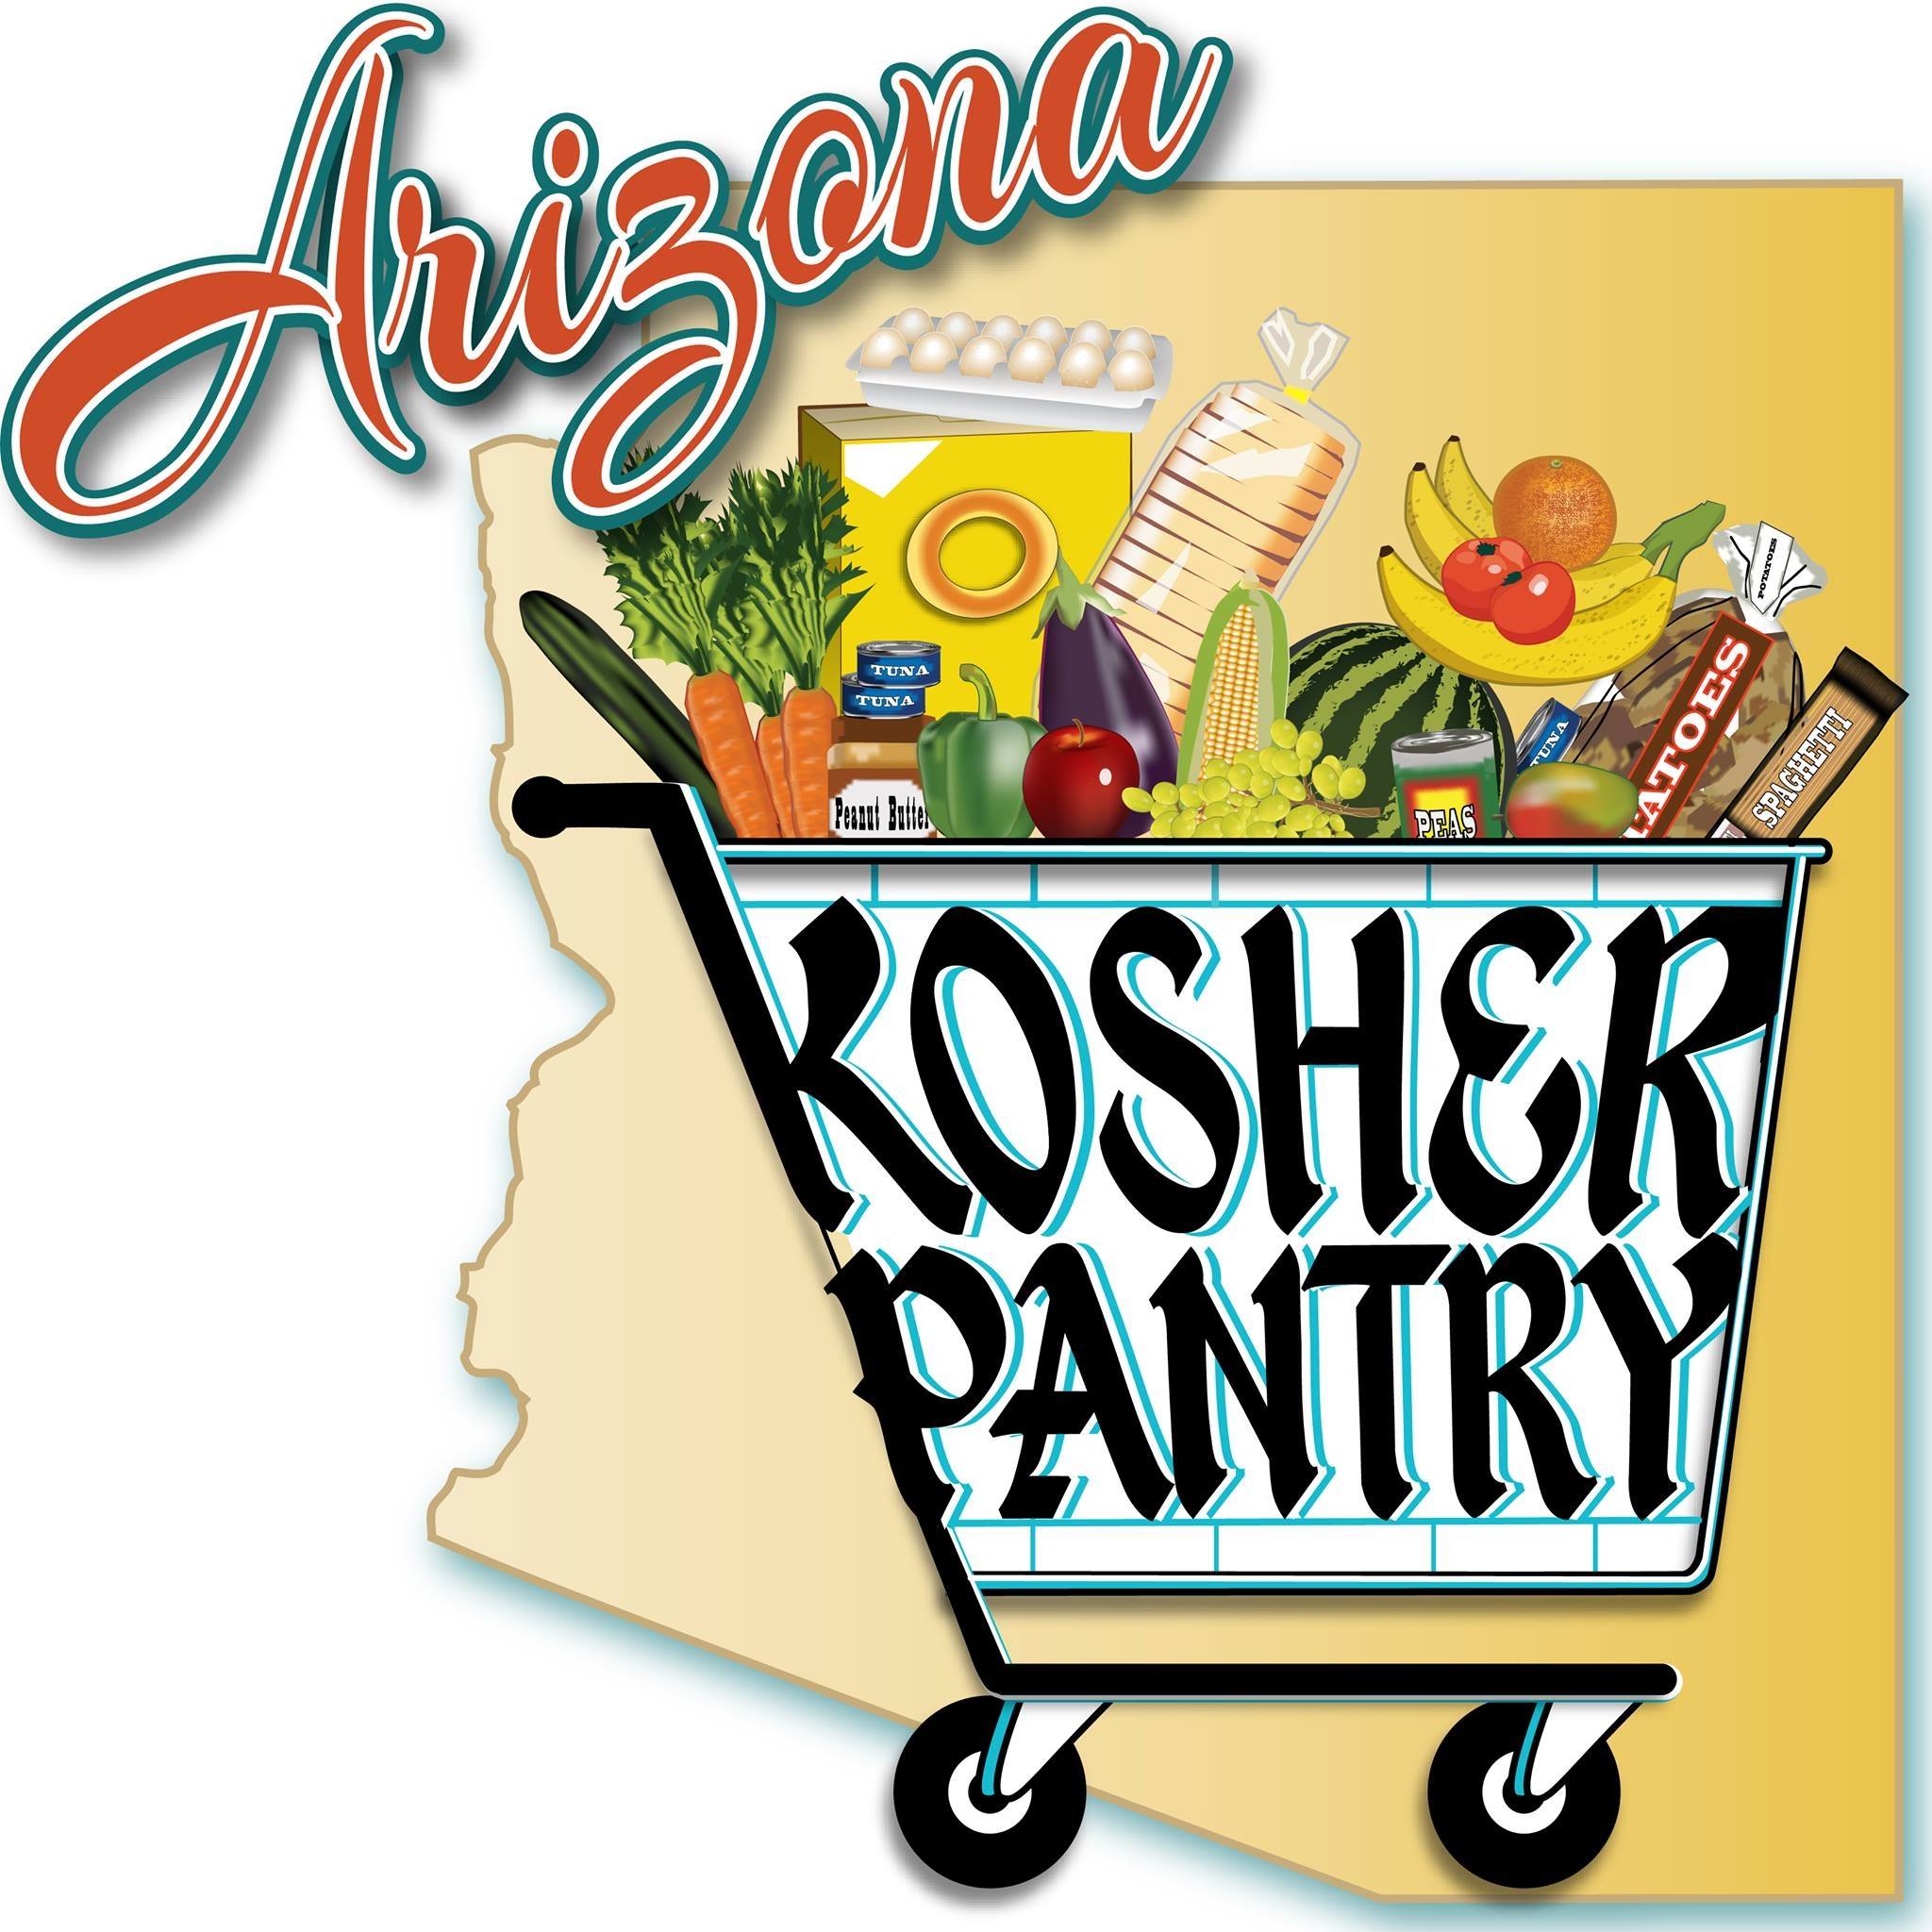 Arizona Kosher Pantry